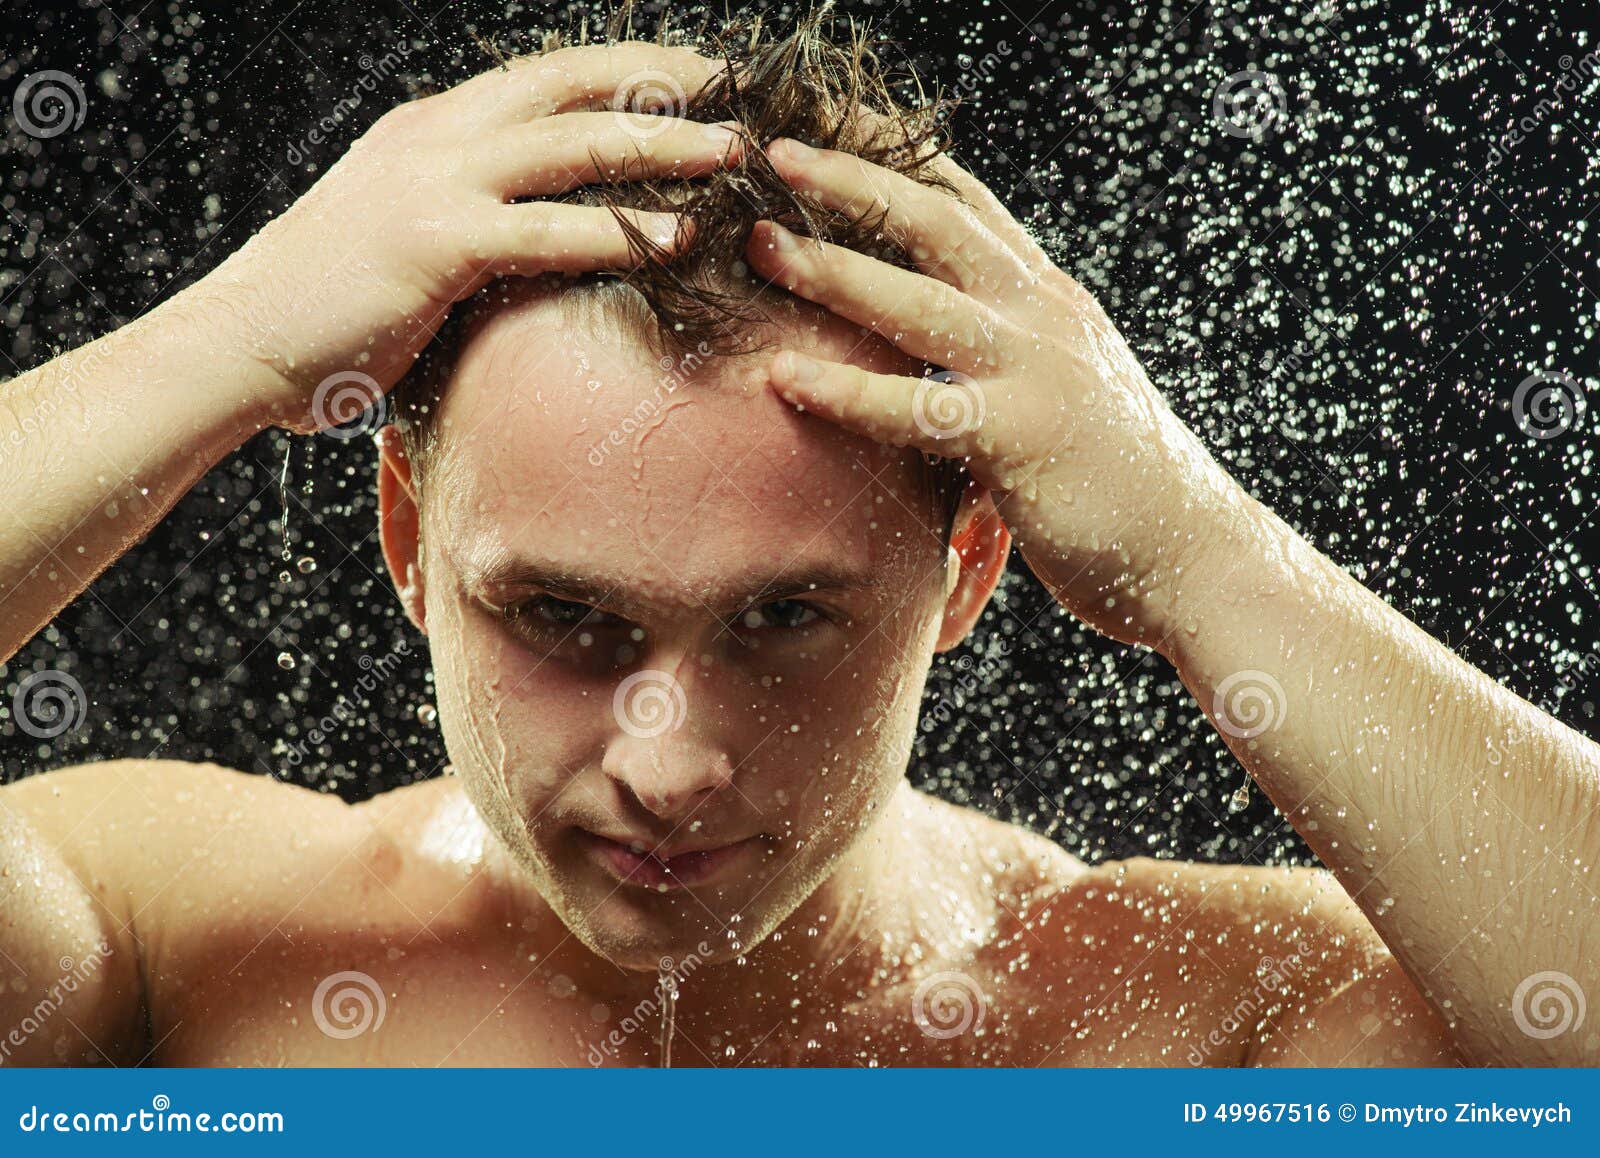 Przystojny młody człowiek bierze prysznic. Przystojny w prysznic Zbliżenie portret młody seksowny mężczyzna pokazuje jego dysponowanego ciało podczas gdy brać prysznic przeciw czarnemu tłu